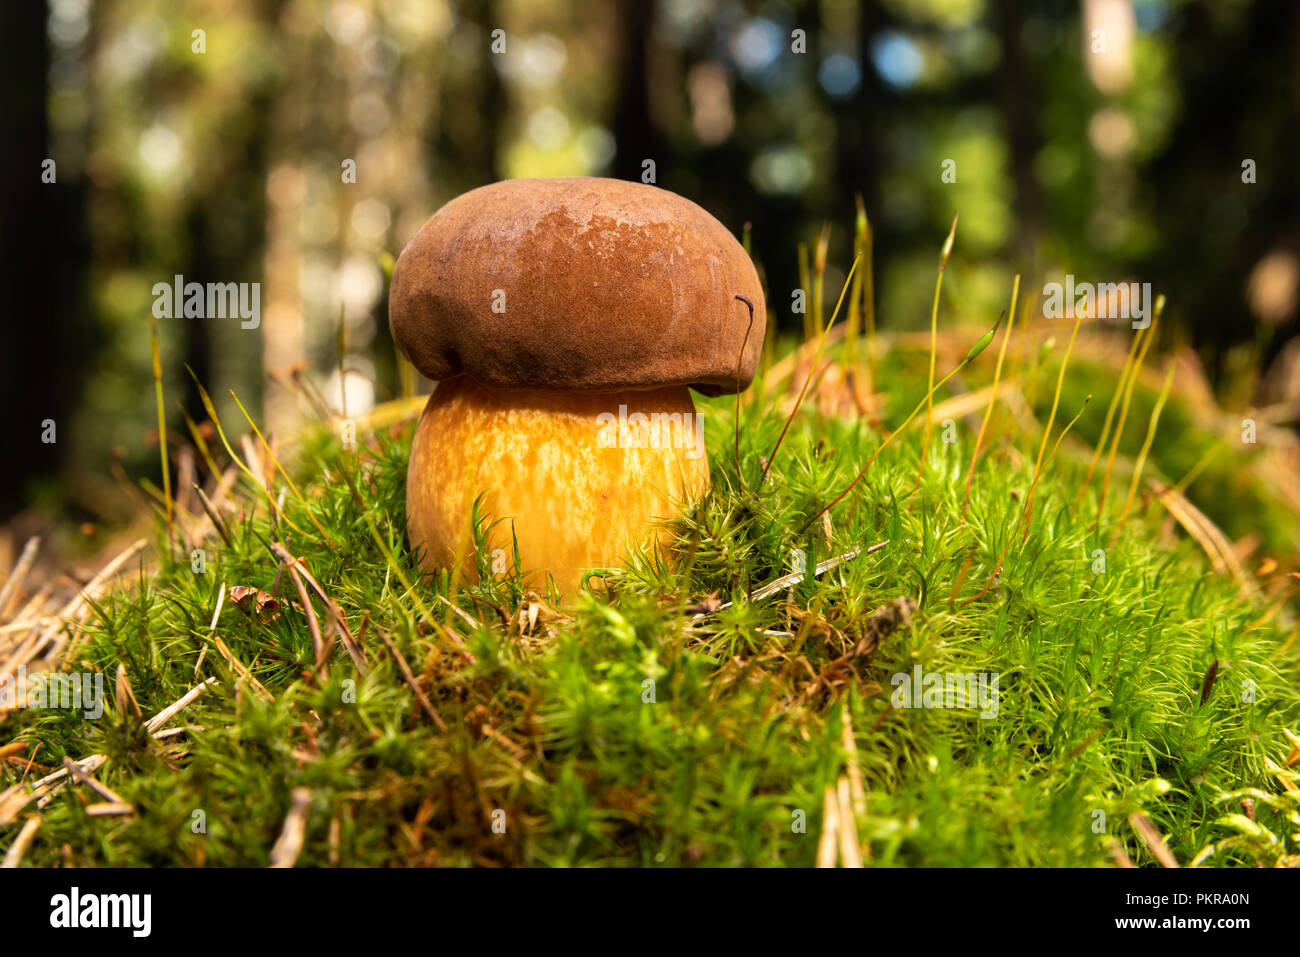 Steinpilze (Boletus edulis) essbar und köstliche Pilz auf grünen Moos im Wald. Steinpilze ist auch als Penny bun, cep und porcino bekannt. Stockfoto